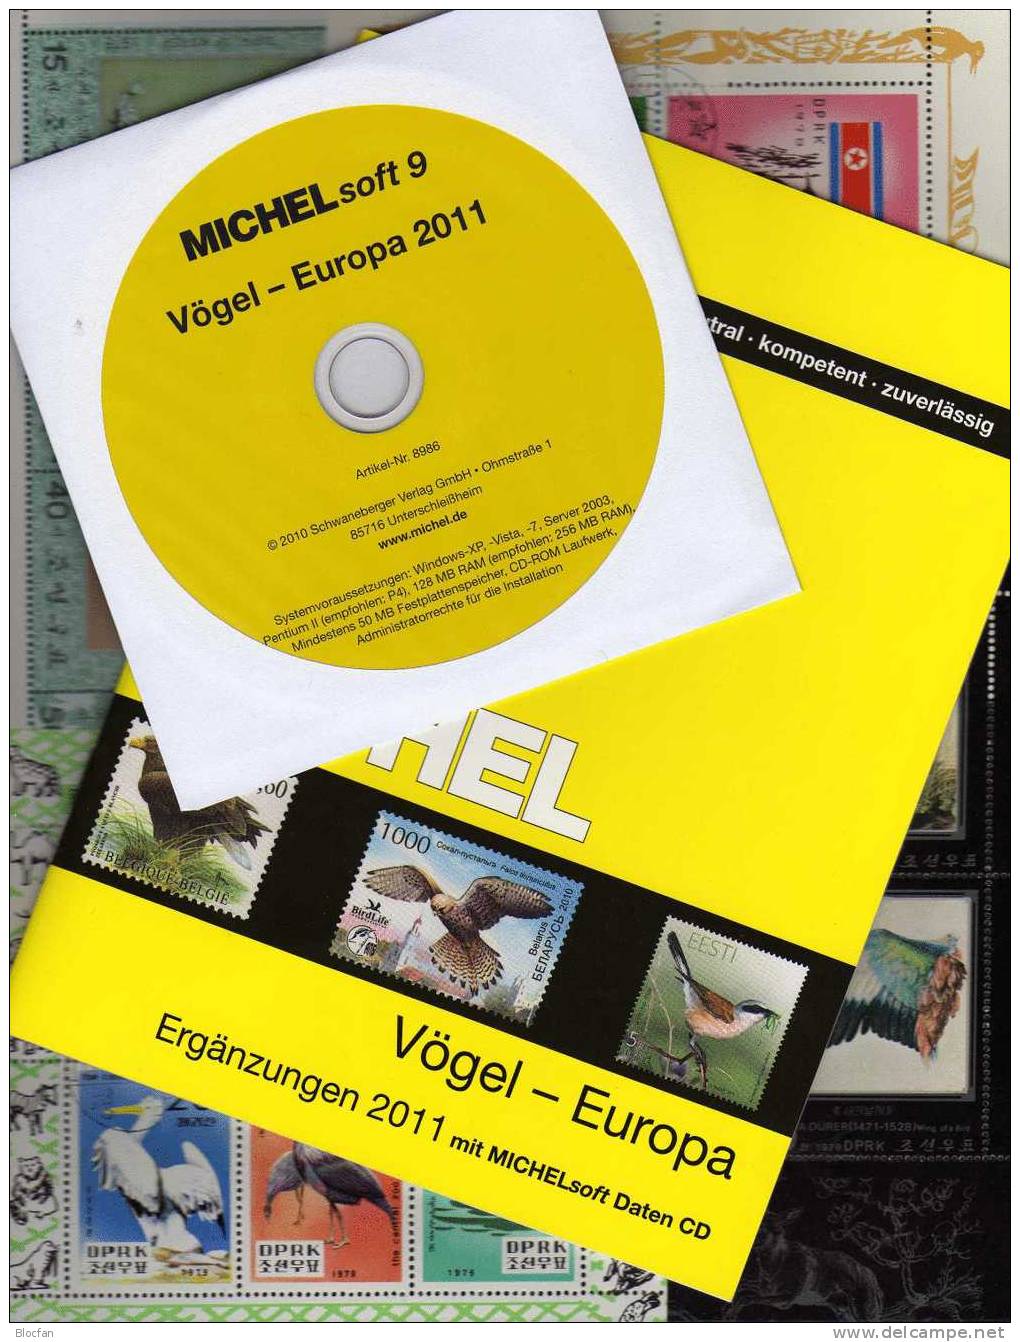 MlCHEL Vögel Europa Katalog Ergänzung 2011 Neu 50€ Mit CD-Rom Birds Special Catalogue In The Pocket - Thématiques